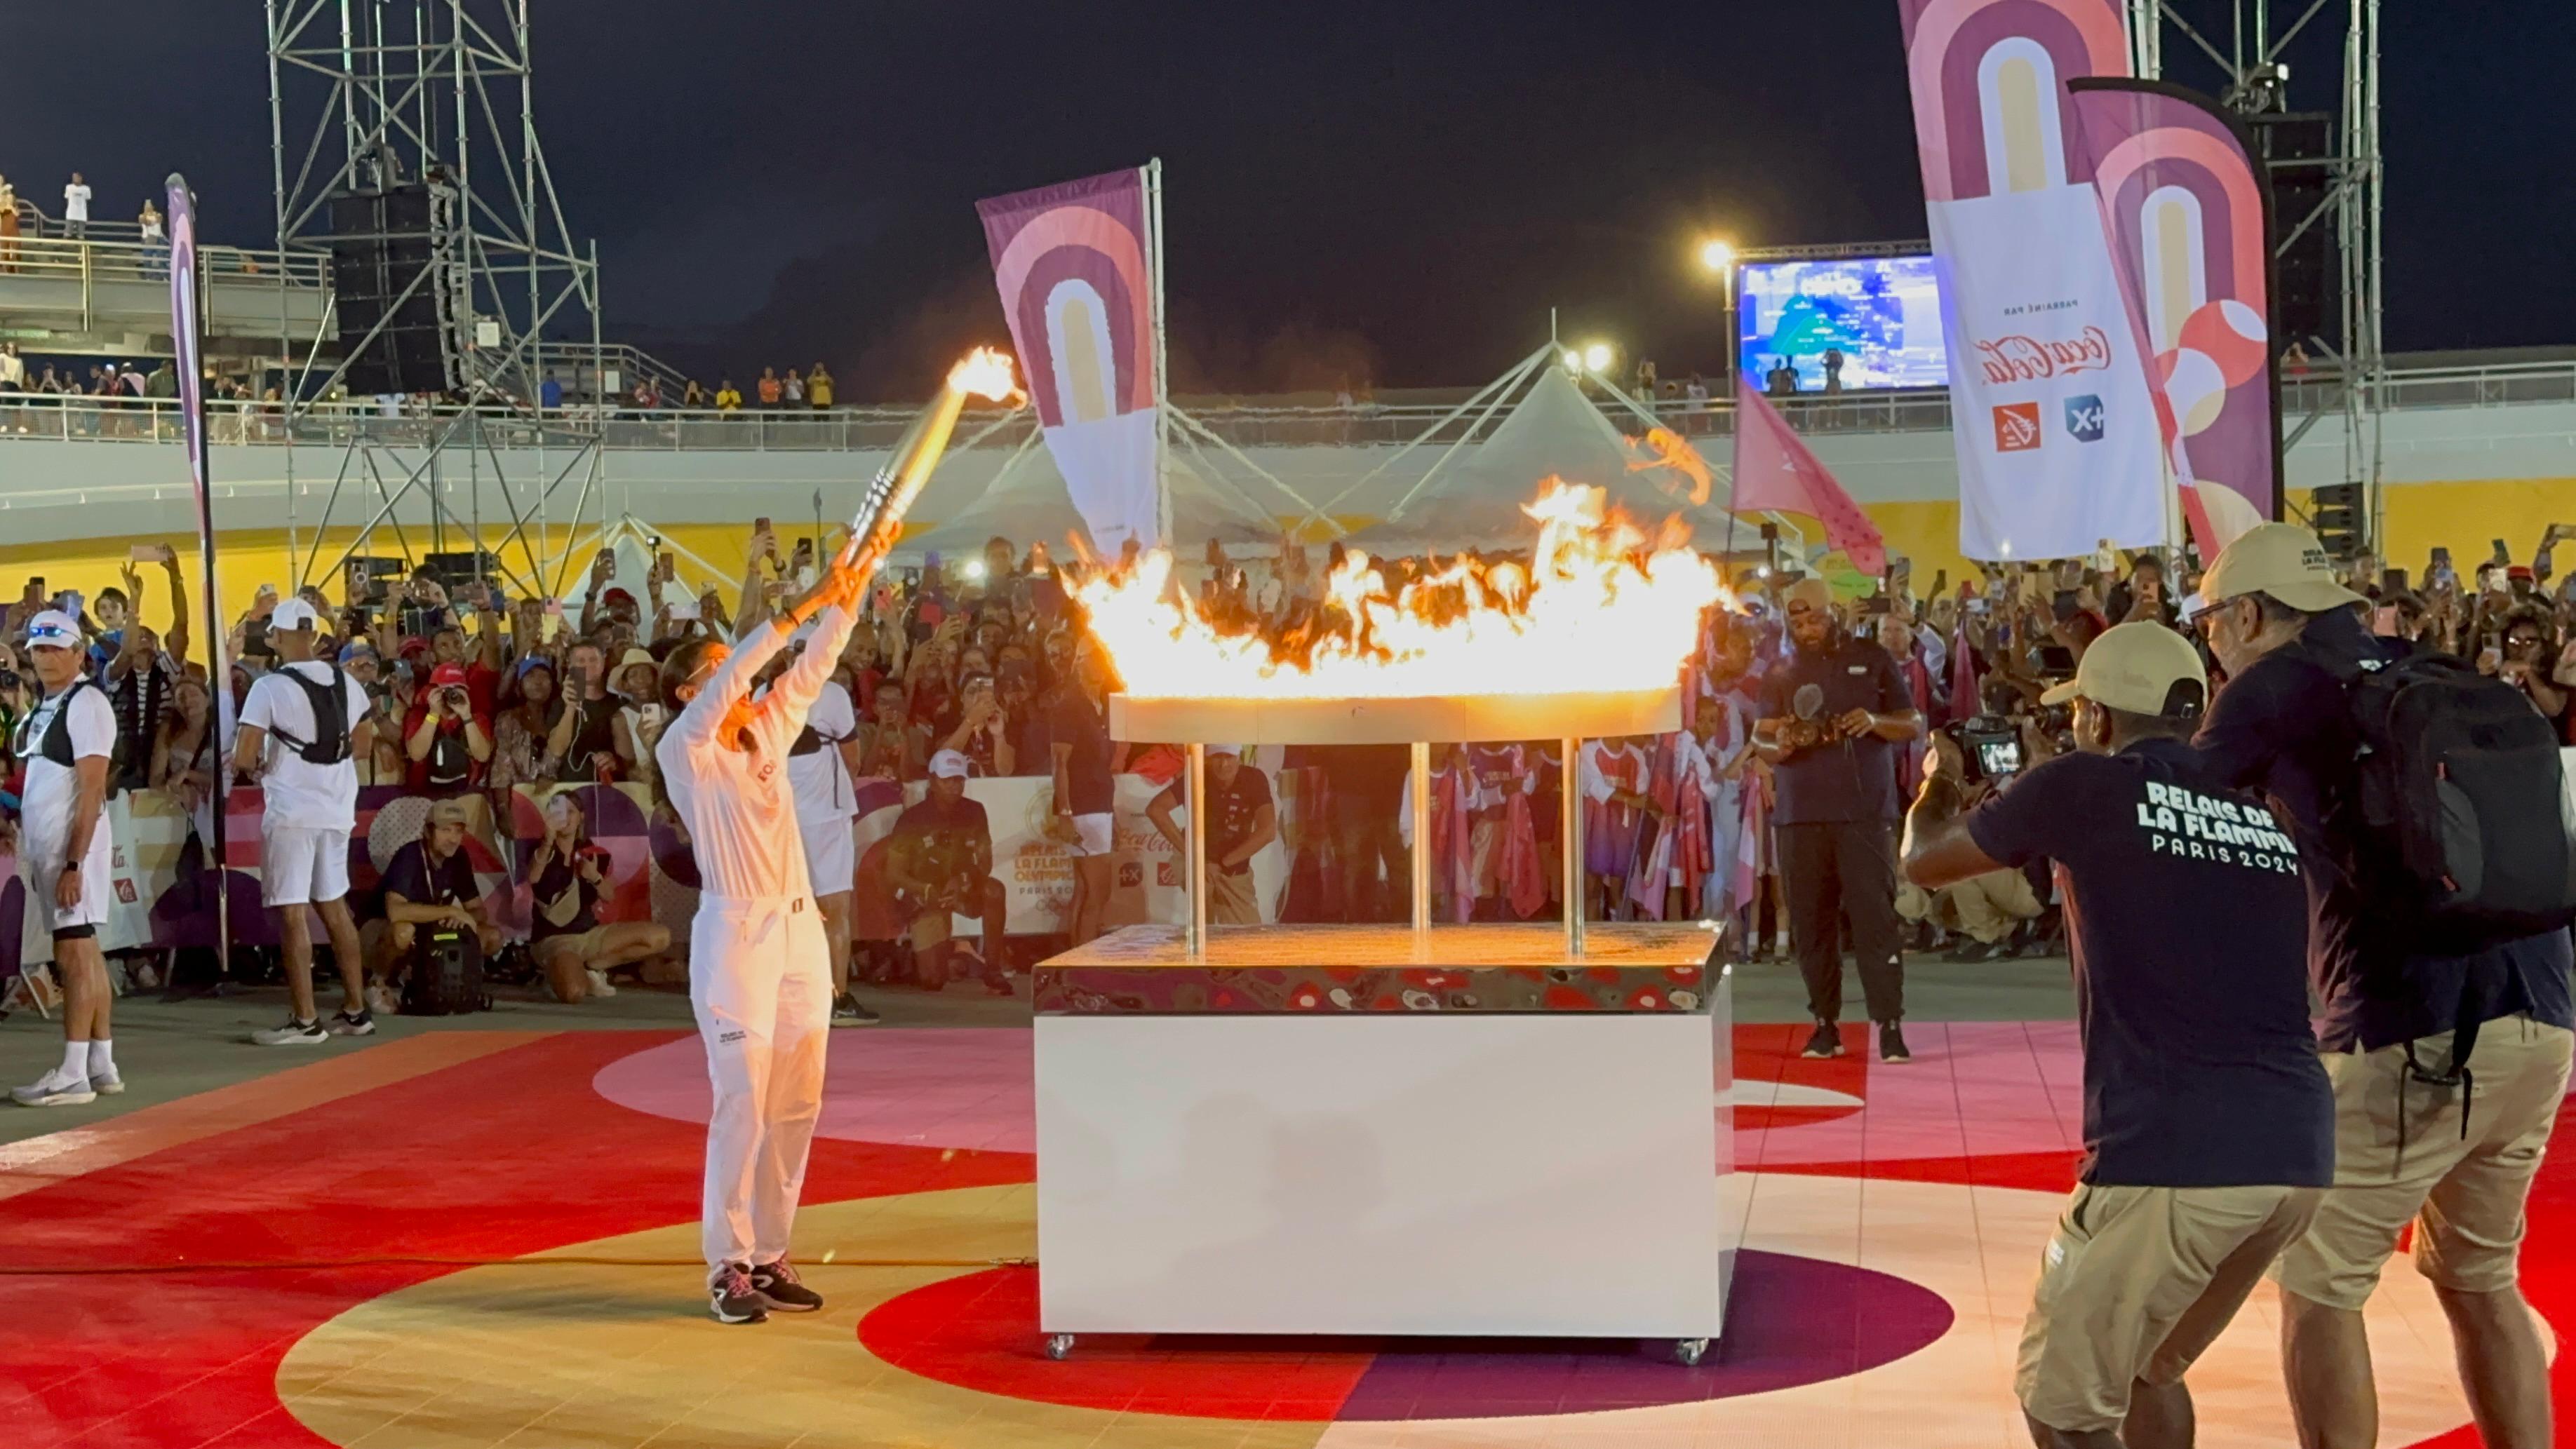     [EN IMAGES] Flamme olympique : revivez l’allumage du chaudron en Guadeloupe !

